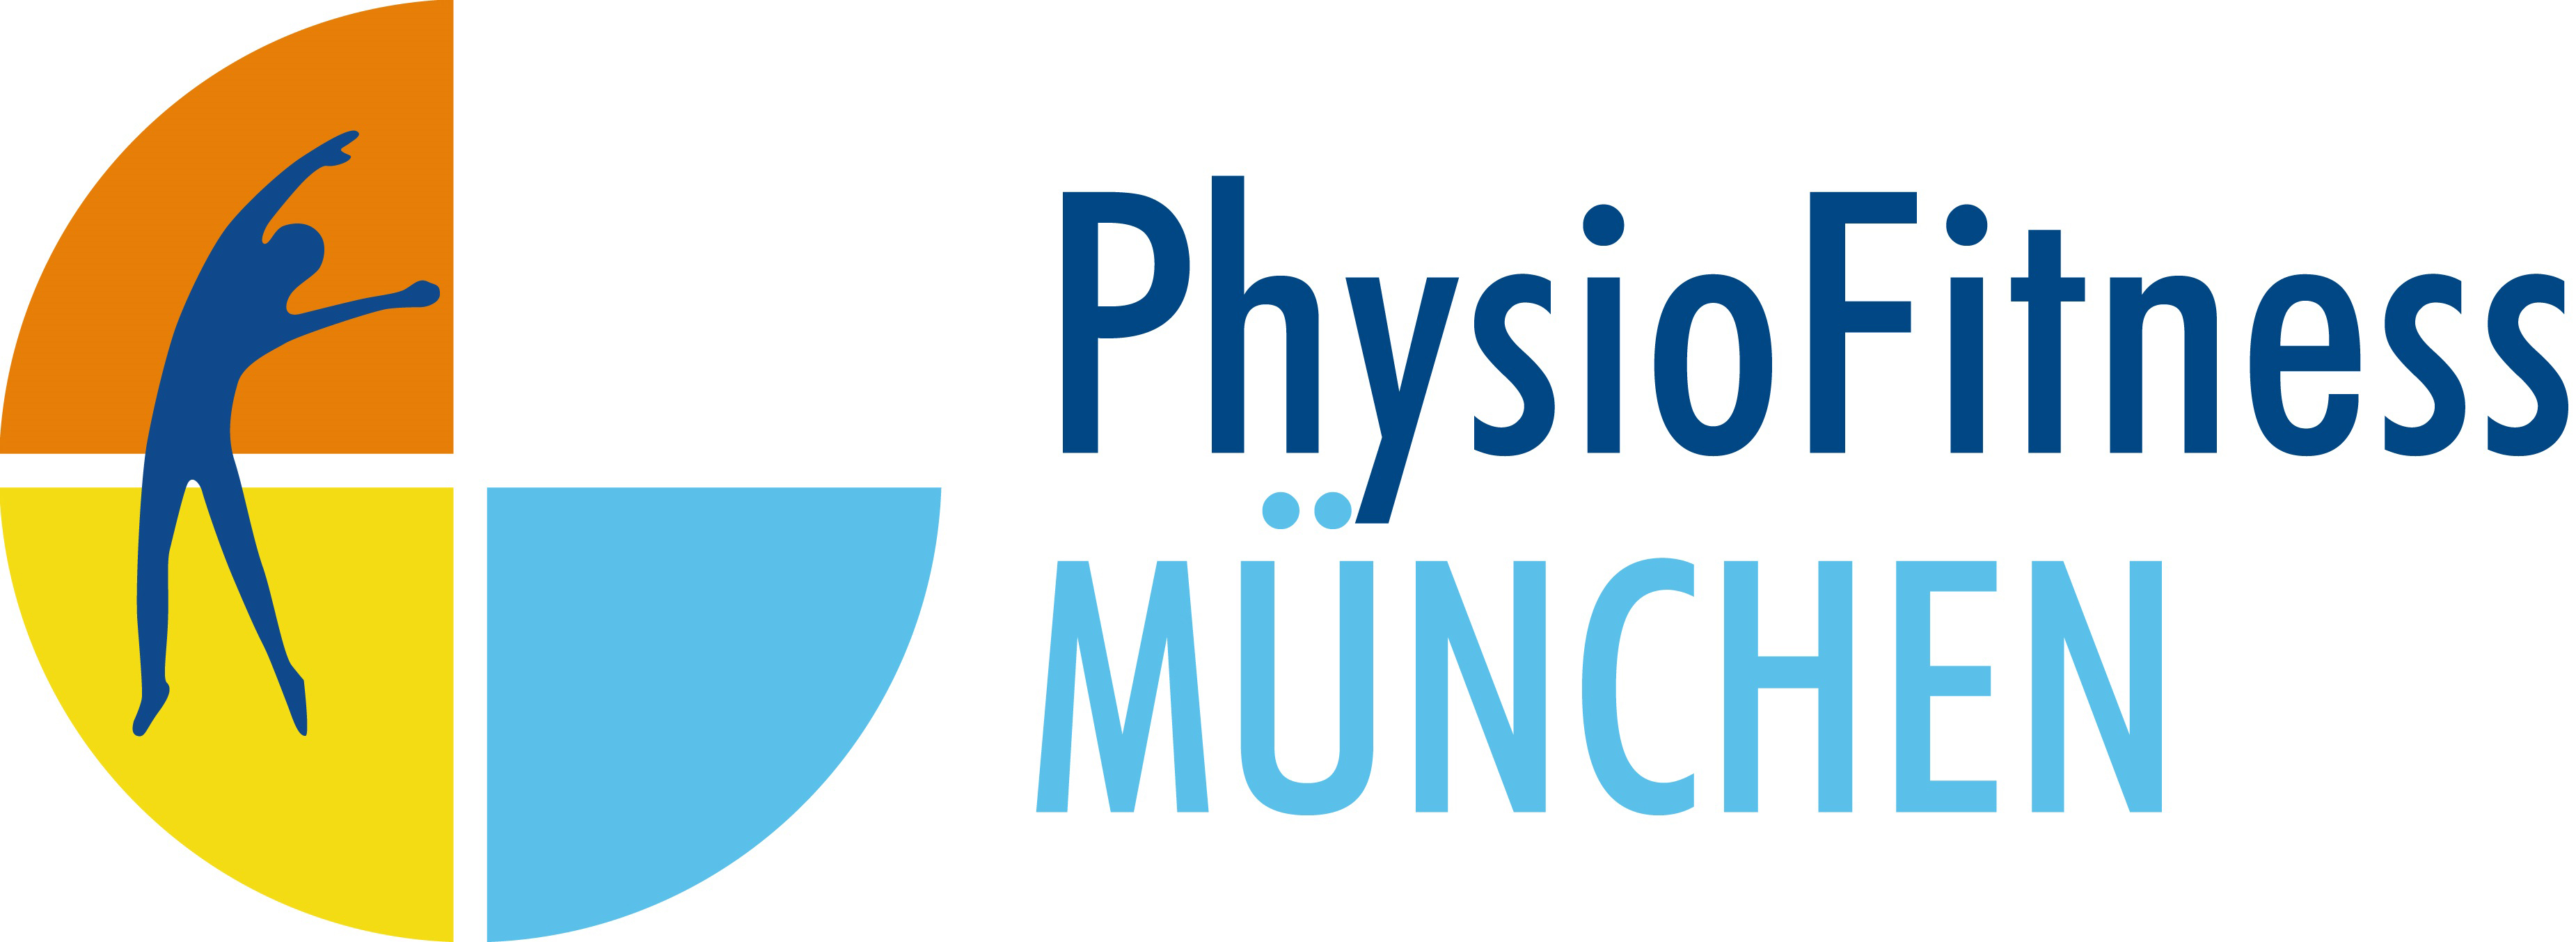   المركزالصحي والرياضي الأول في ميونيخ بألمانيـا Herzlich Willkommen im PhysioFitness München Physiofitness-muenchen-logo-rgb-96dpi